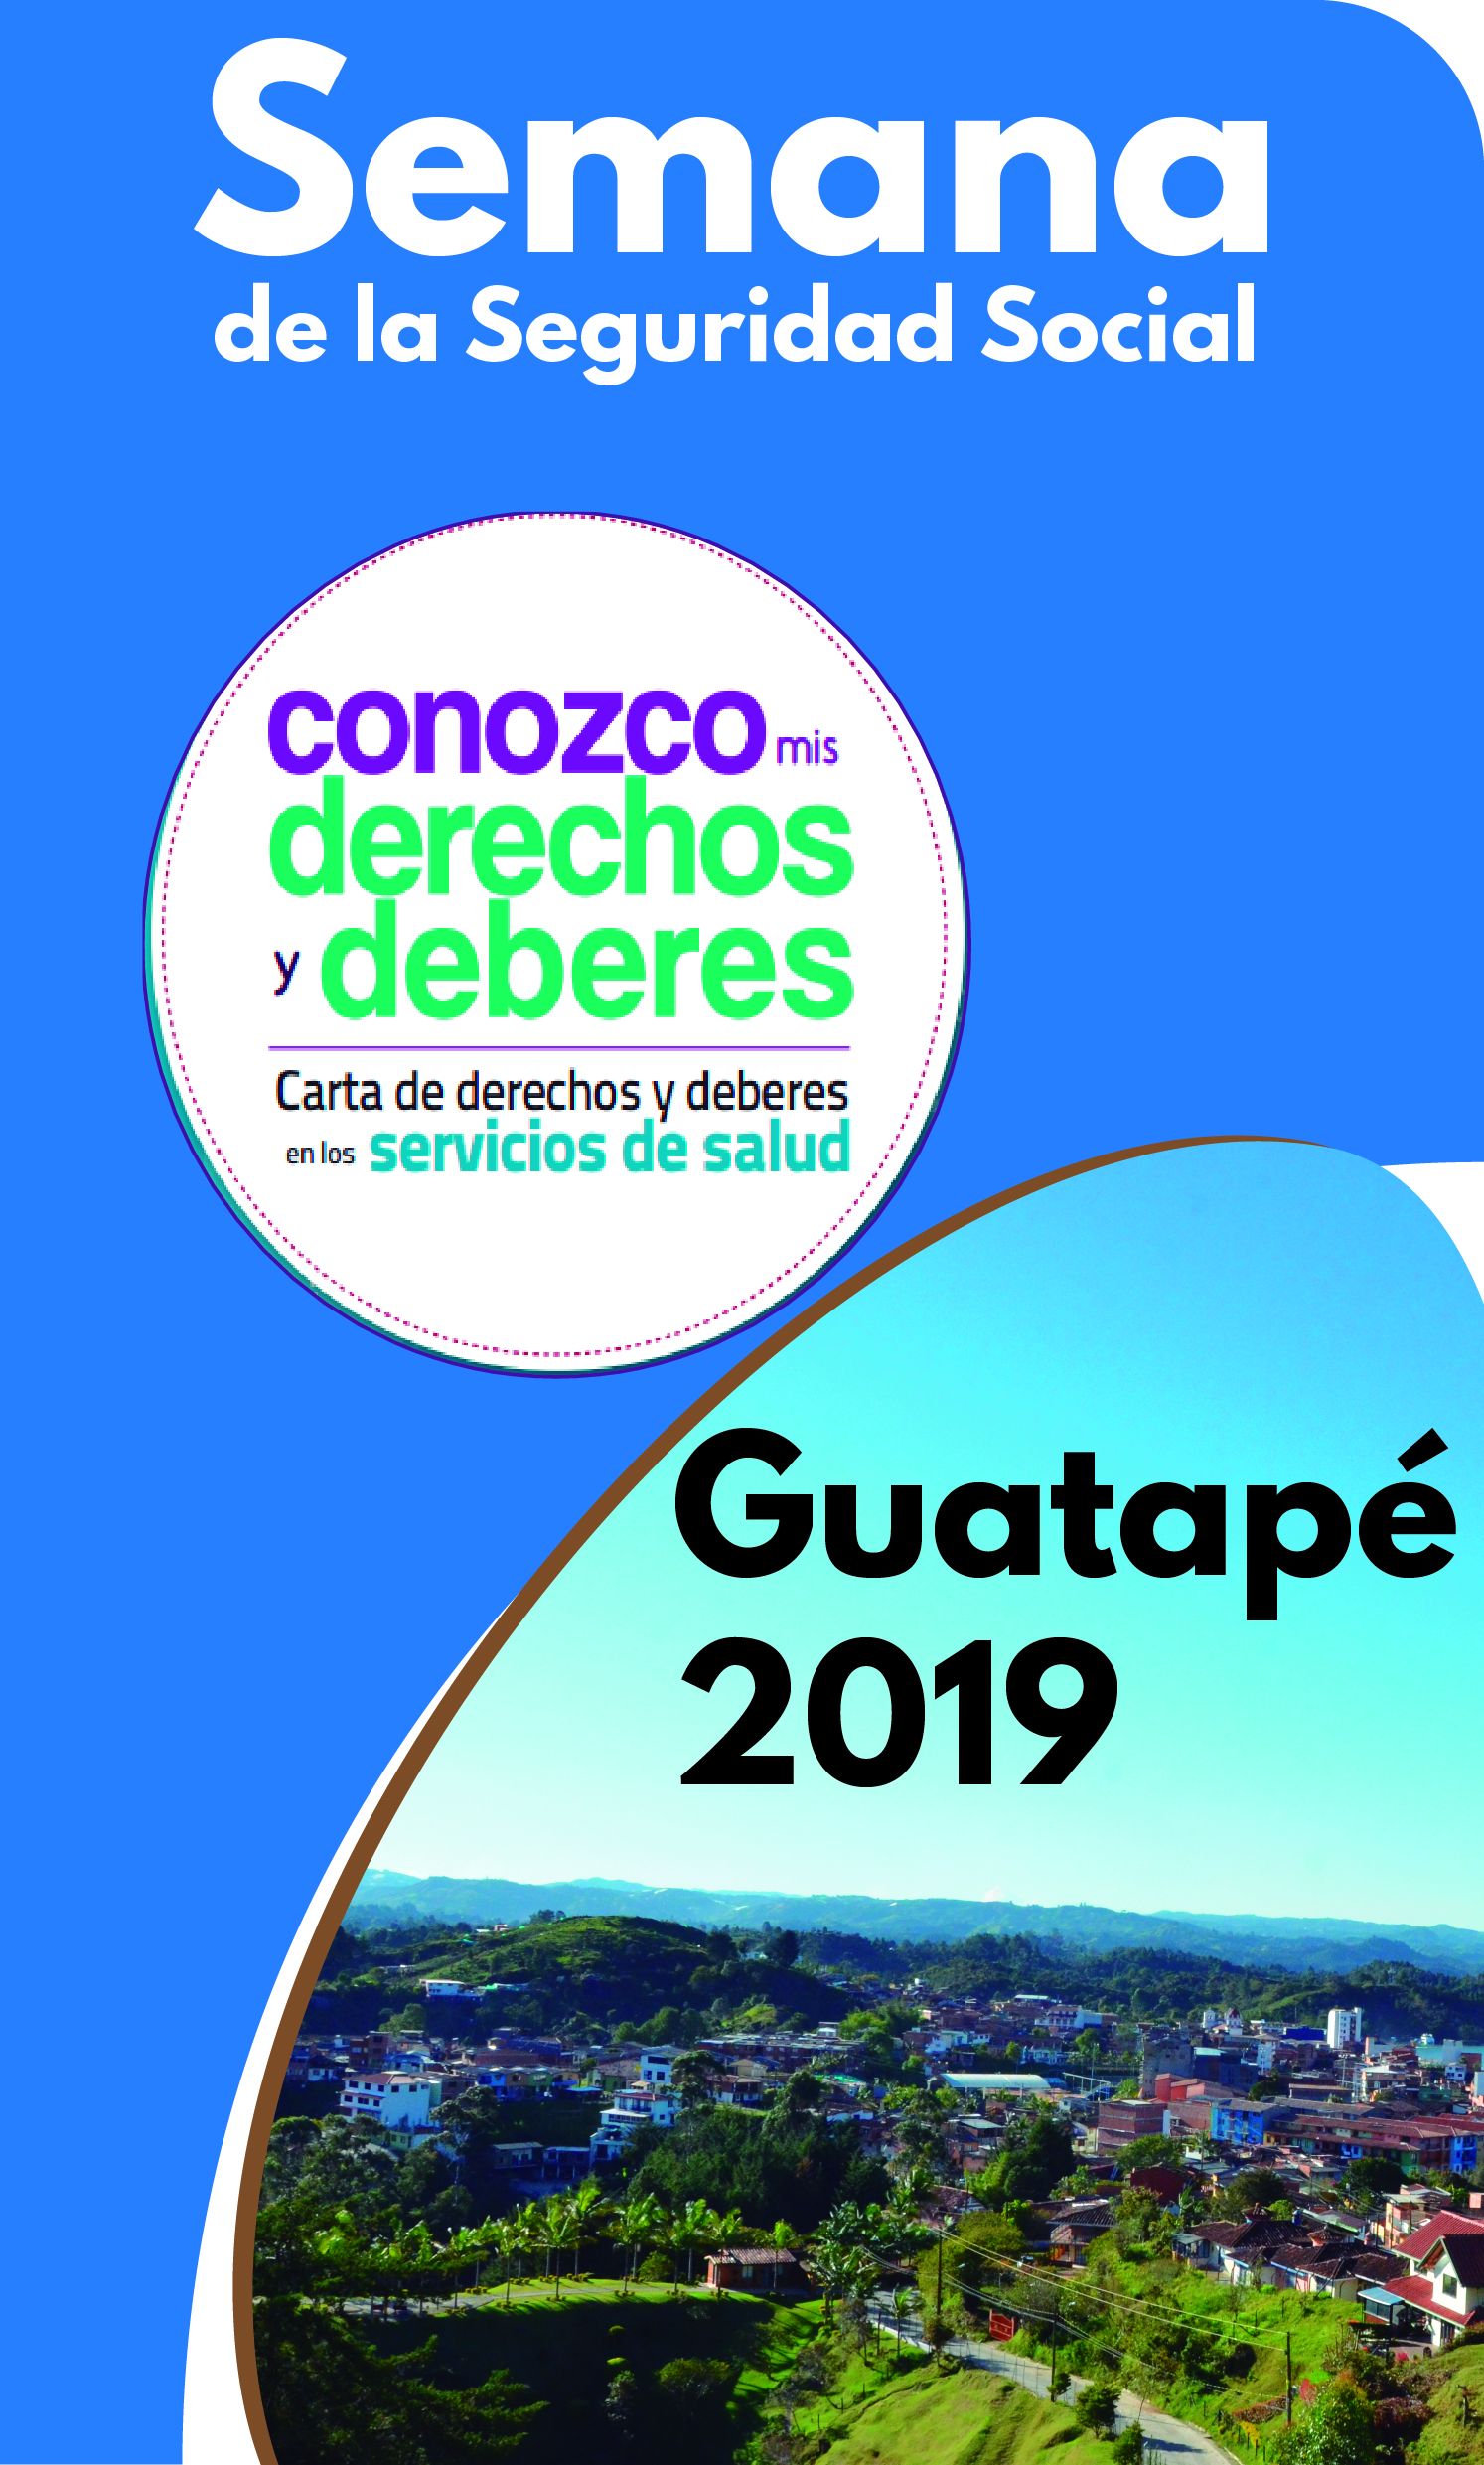 En Guatapé se celebra la Semana de la Seguridad Social